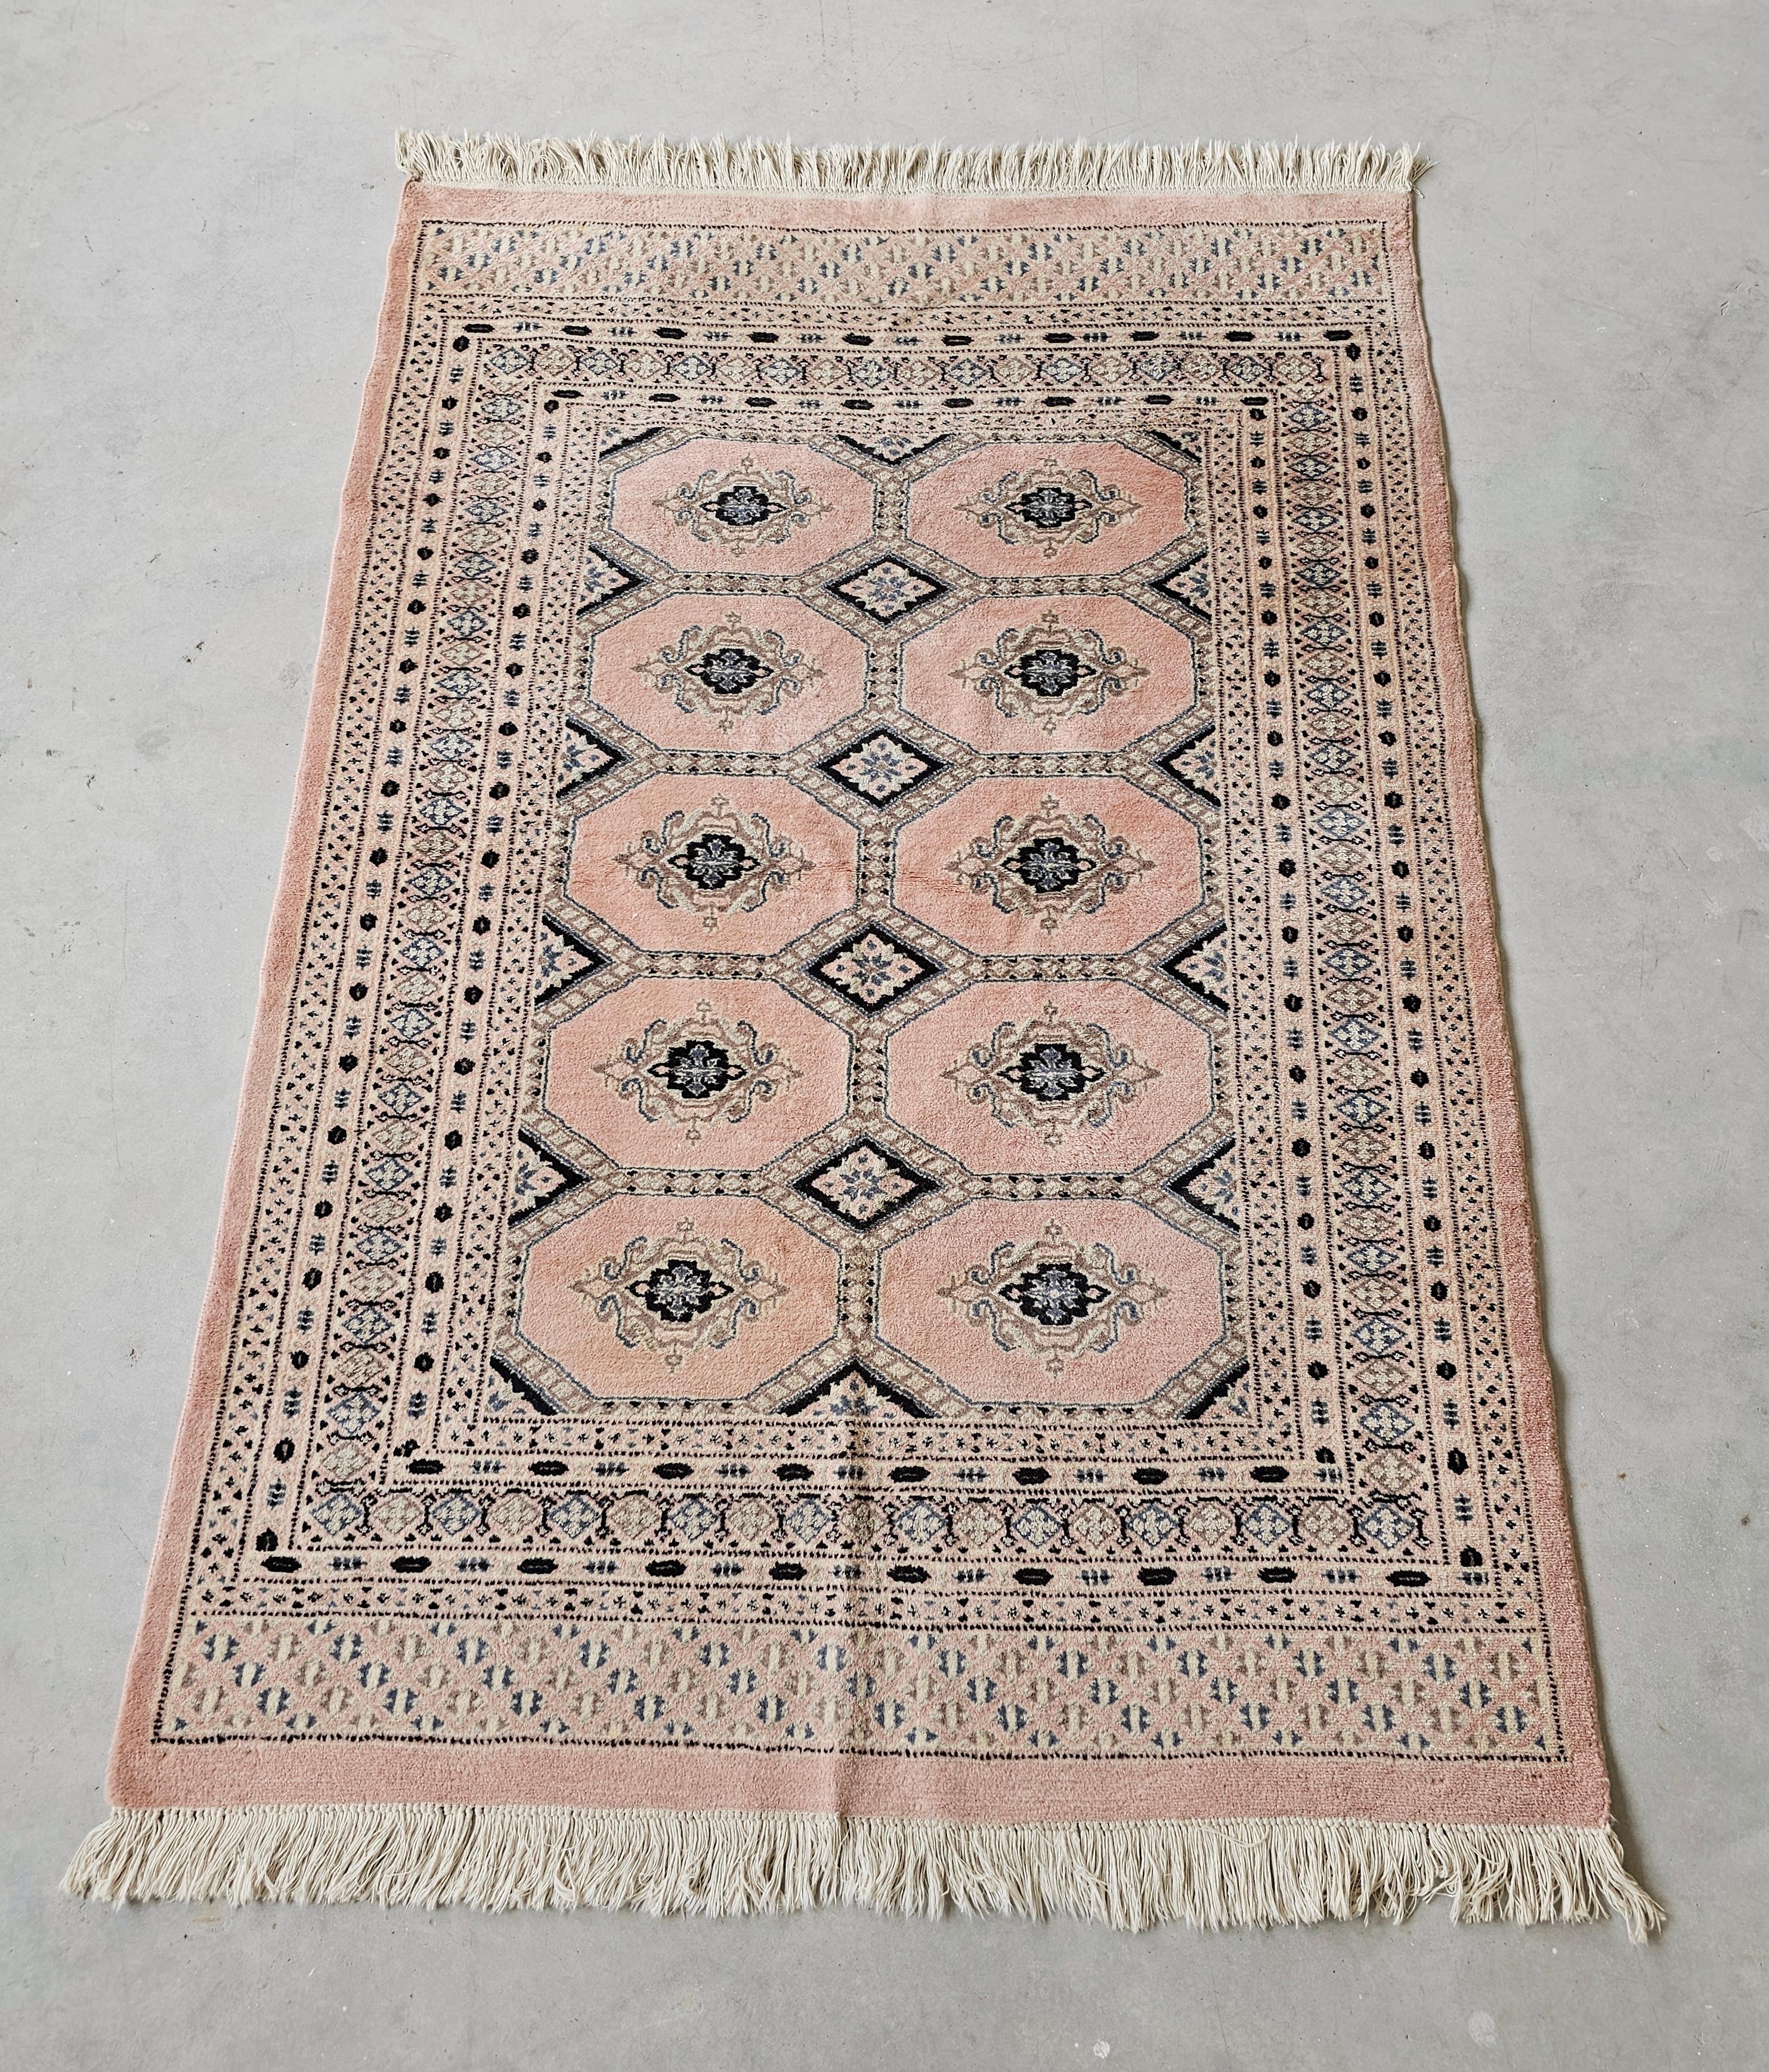 Dans cette annonce, vous trouverez un tapis Bokhara vintage dans un ton rose poudré très rare. Il s'agit d'un tapis 100% laine noué à la main avec des nœuds de haute densité. Fabriqué au Pakistan vers les années 1950.

Très bon état vintage avec